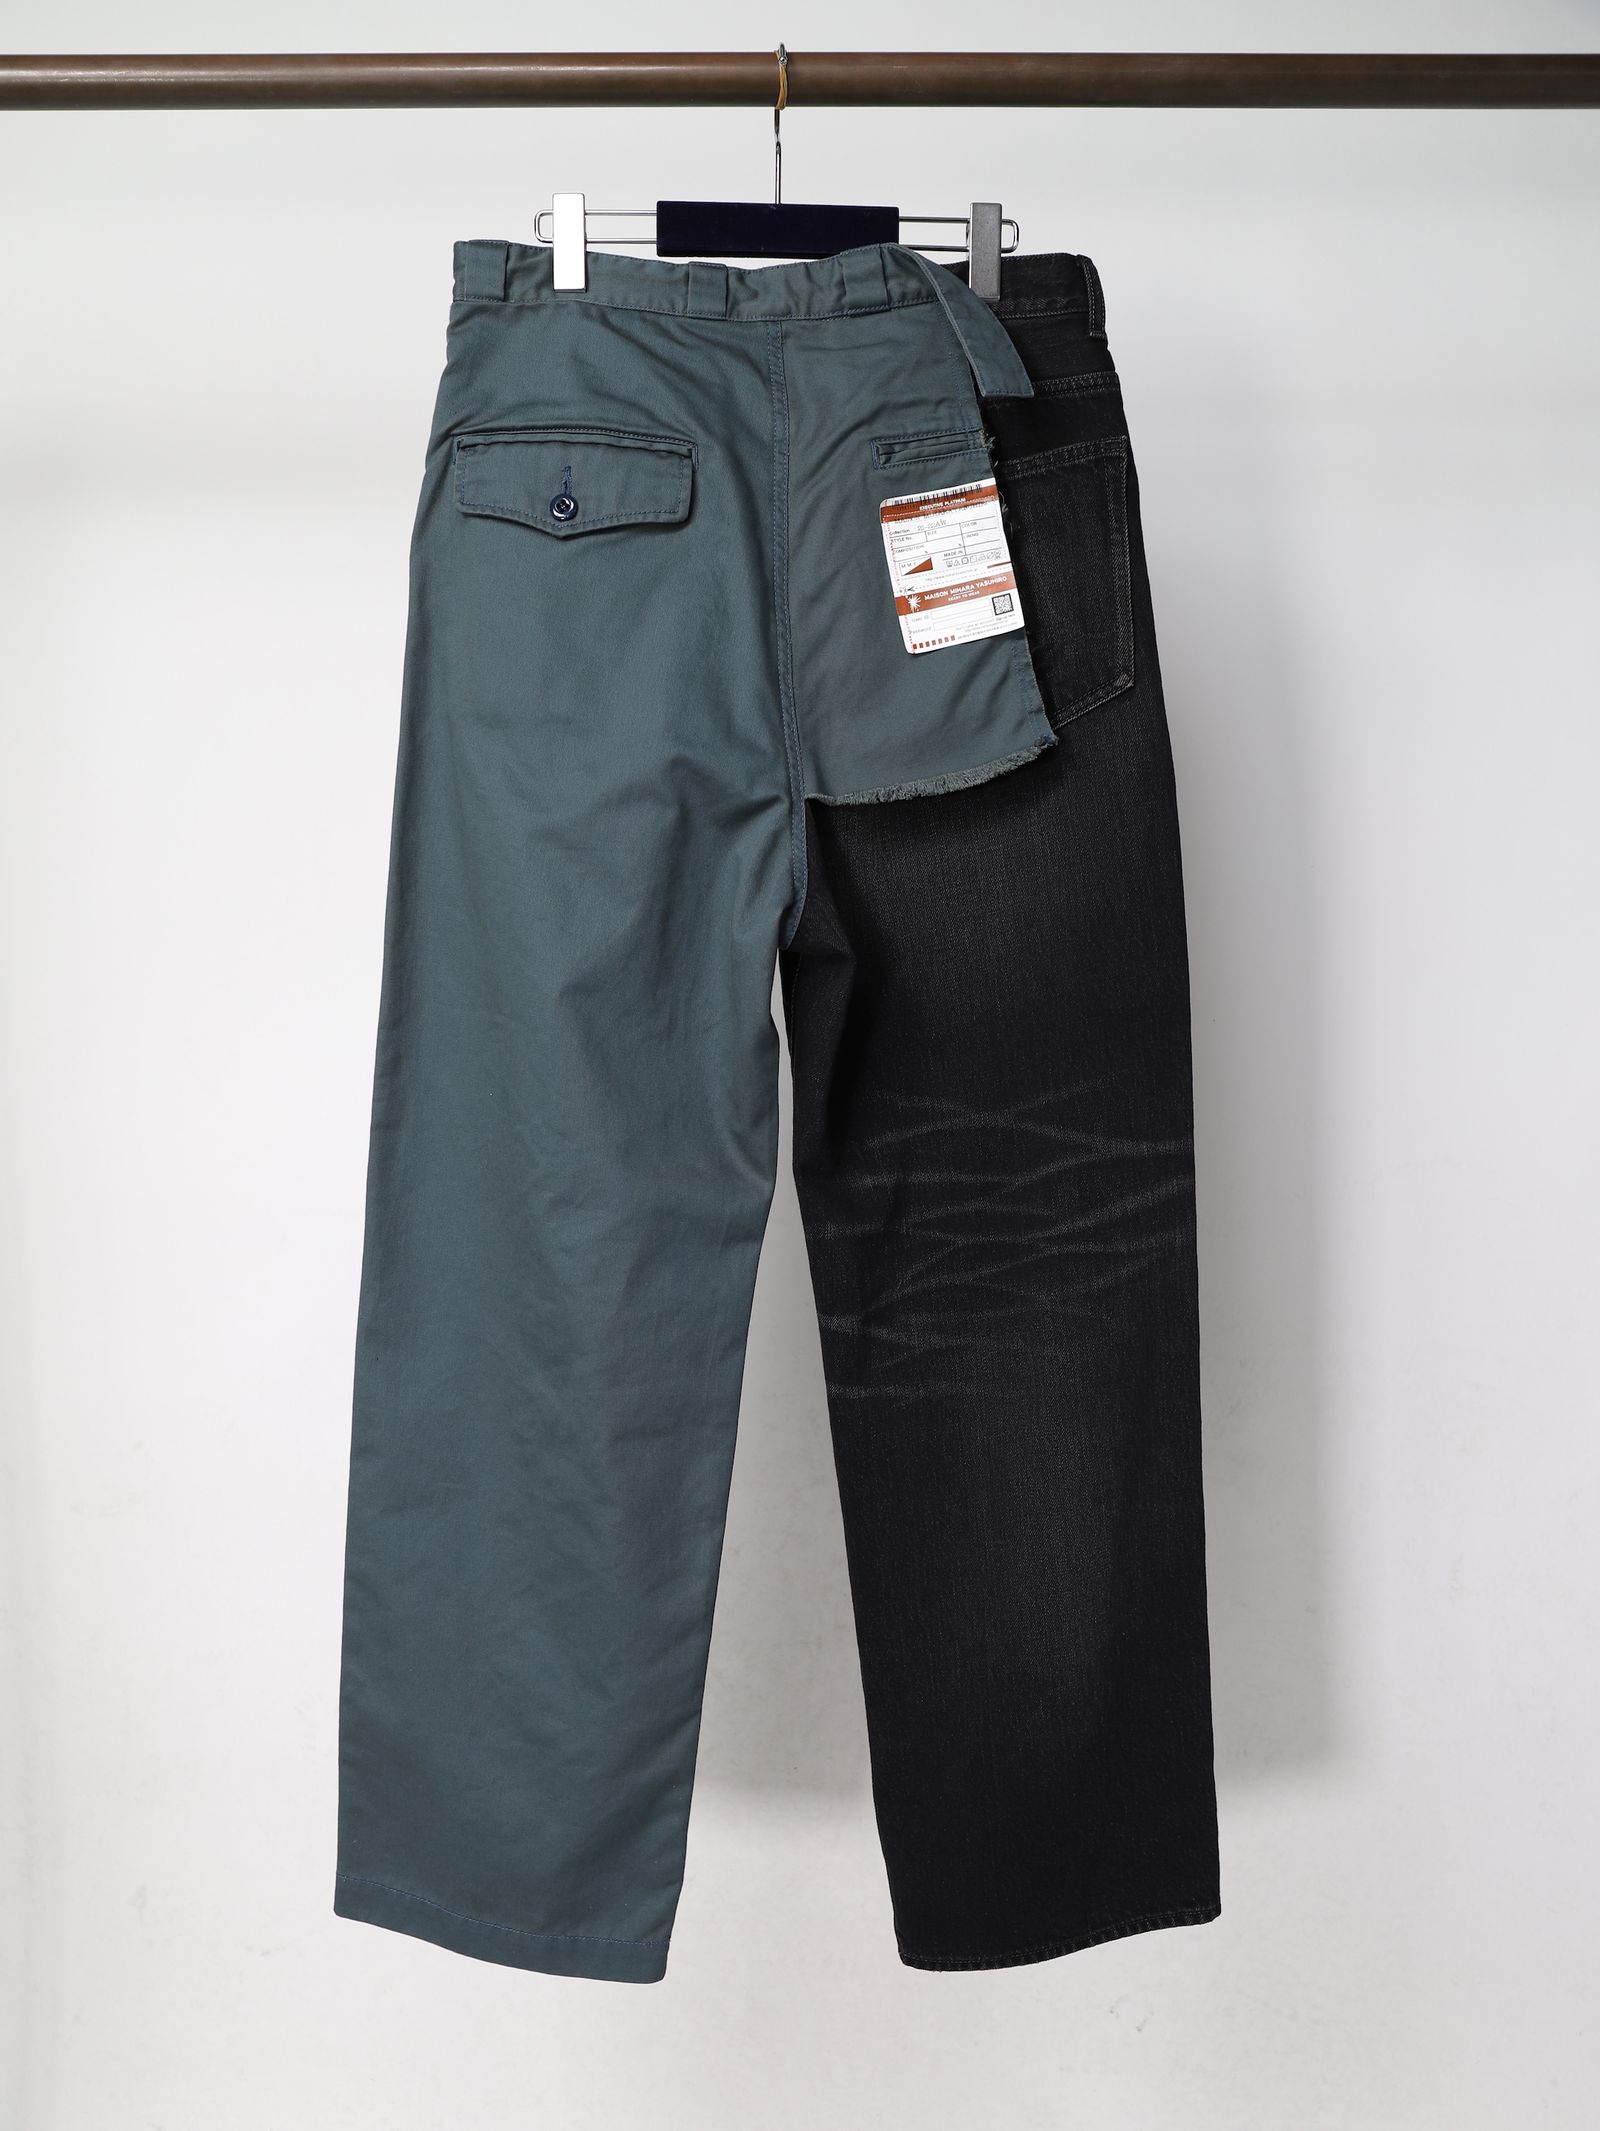 Denim × Chino Pants - デニム×チノ ドッキングデザイン パンツ - 44(S)